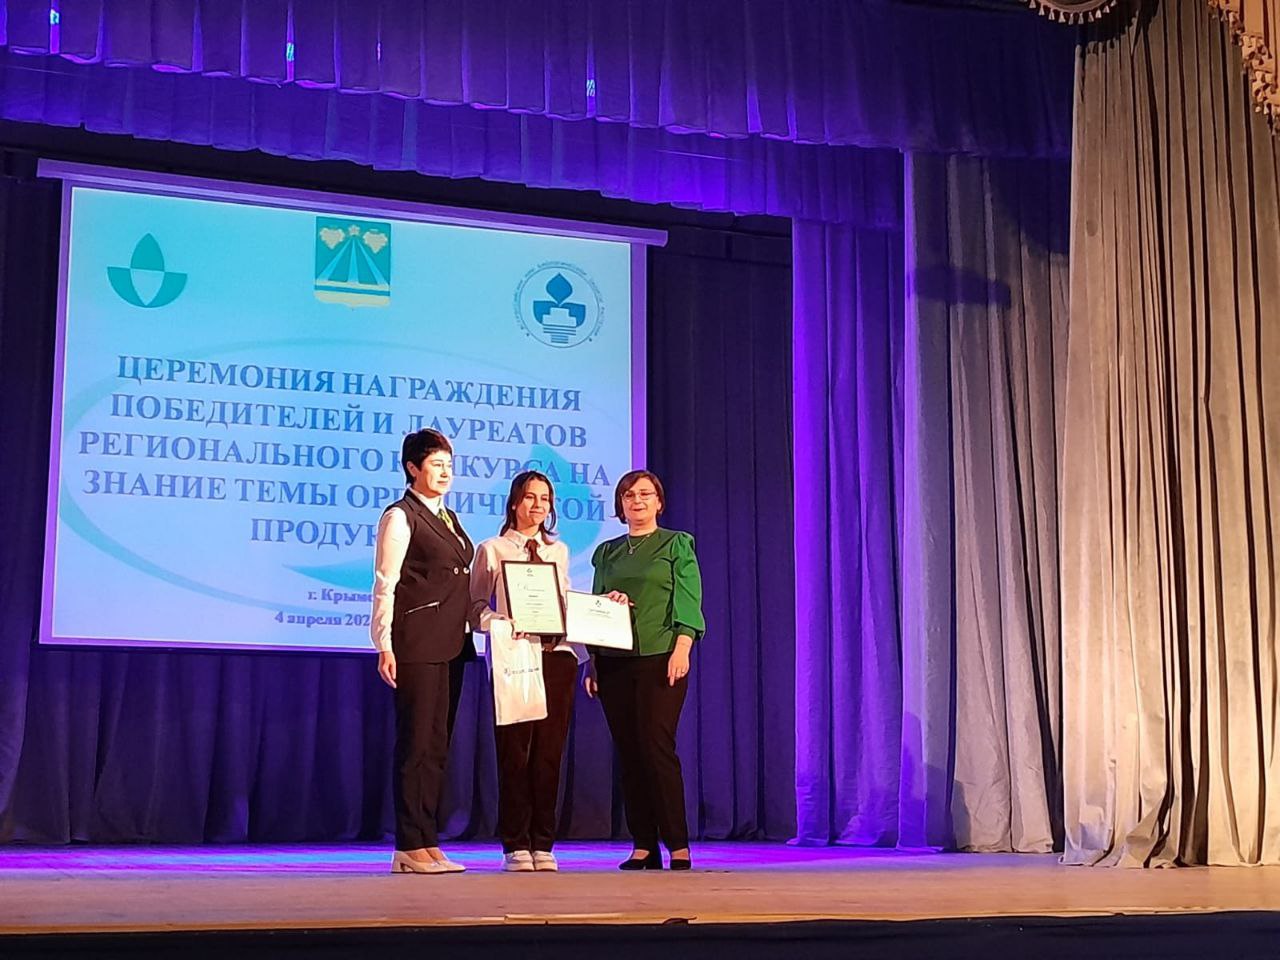 На Кубани наградили победителей и призёров конкурса на знание темы органической продукции